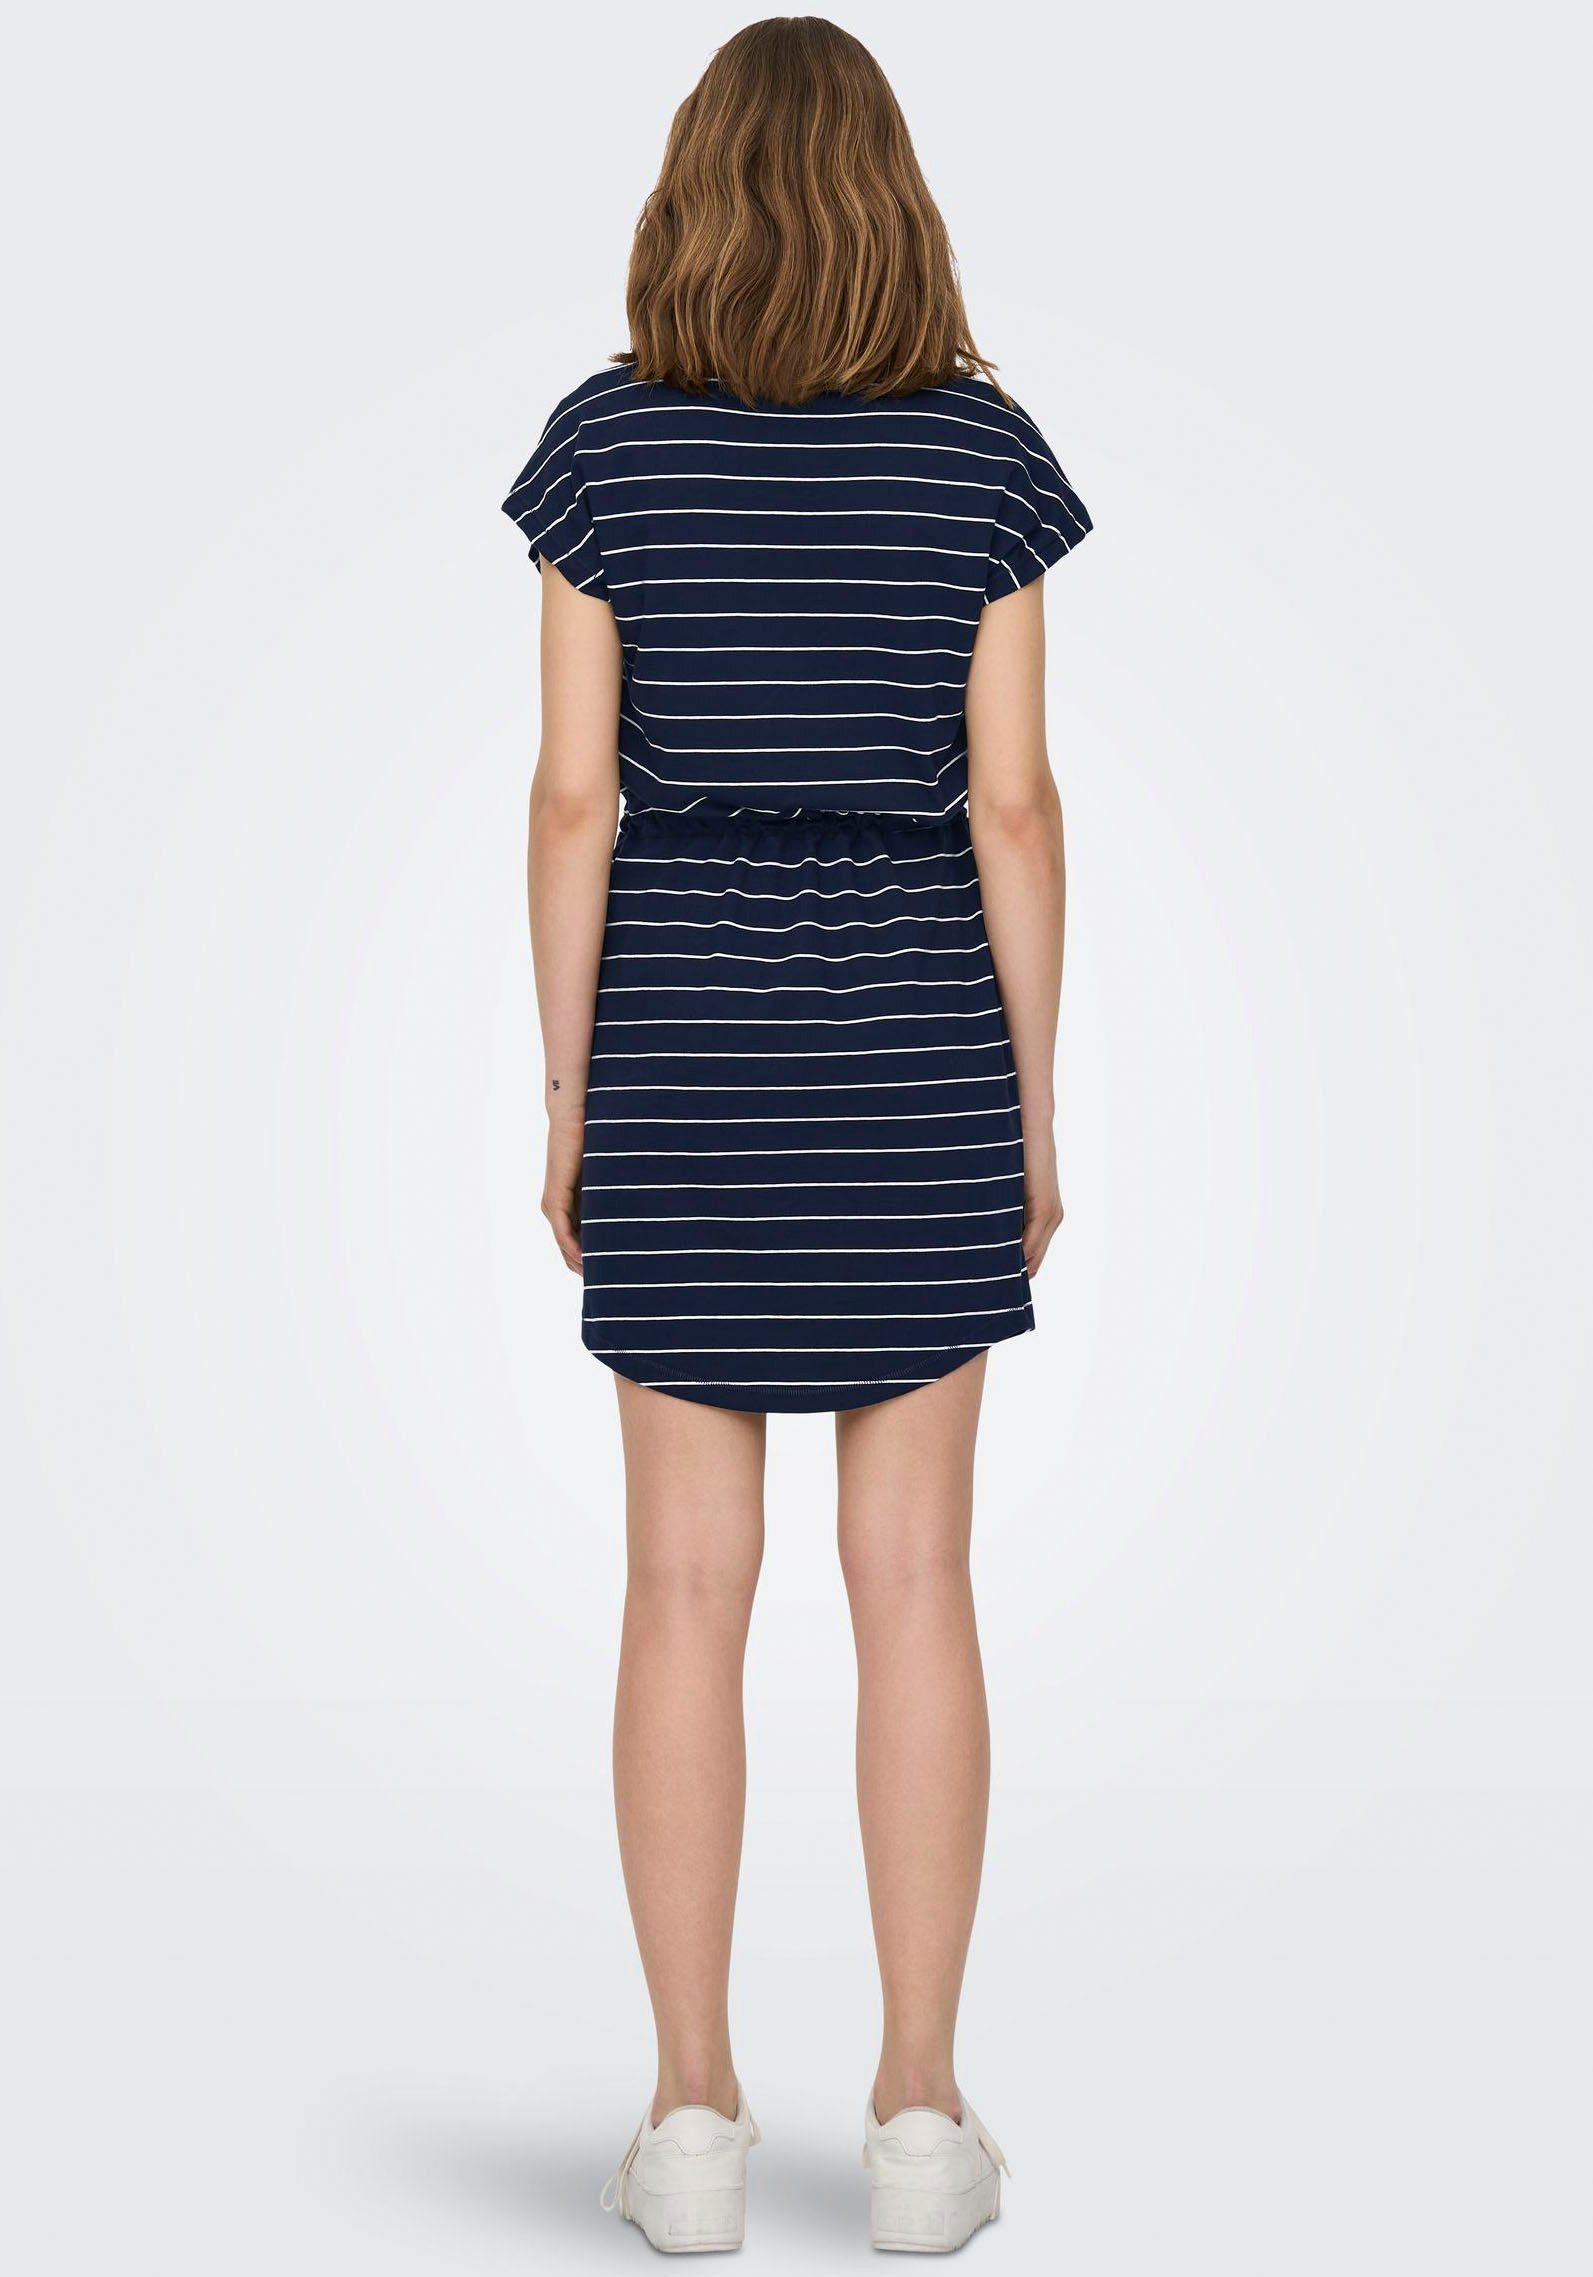 S/S in verschiedenen Sky Minikleid NOOS stripes Designs ONLY ONLMAY Night DRESS